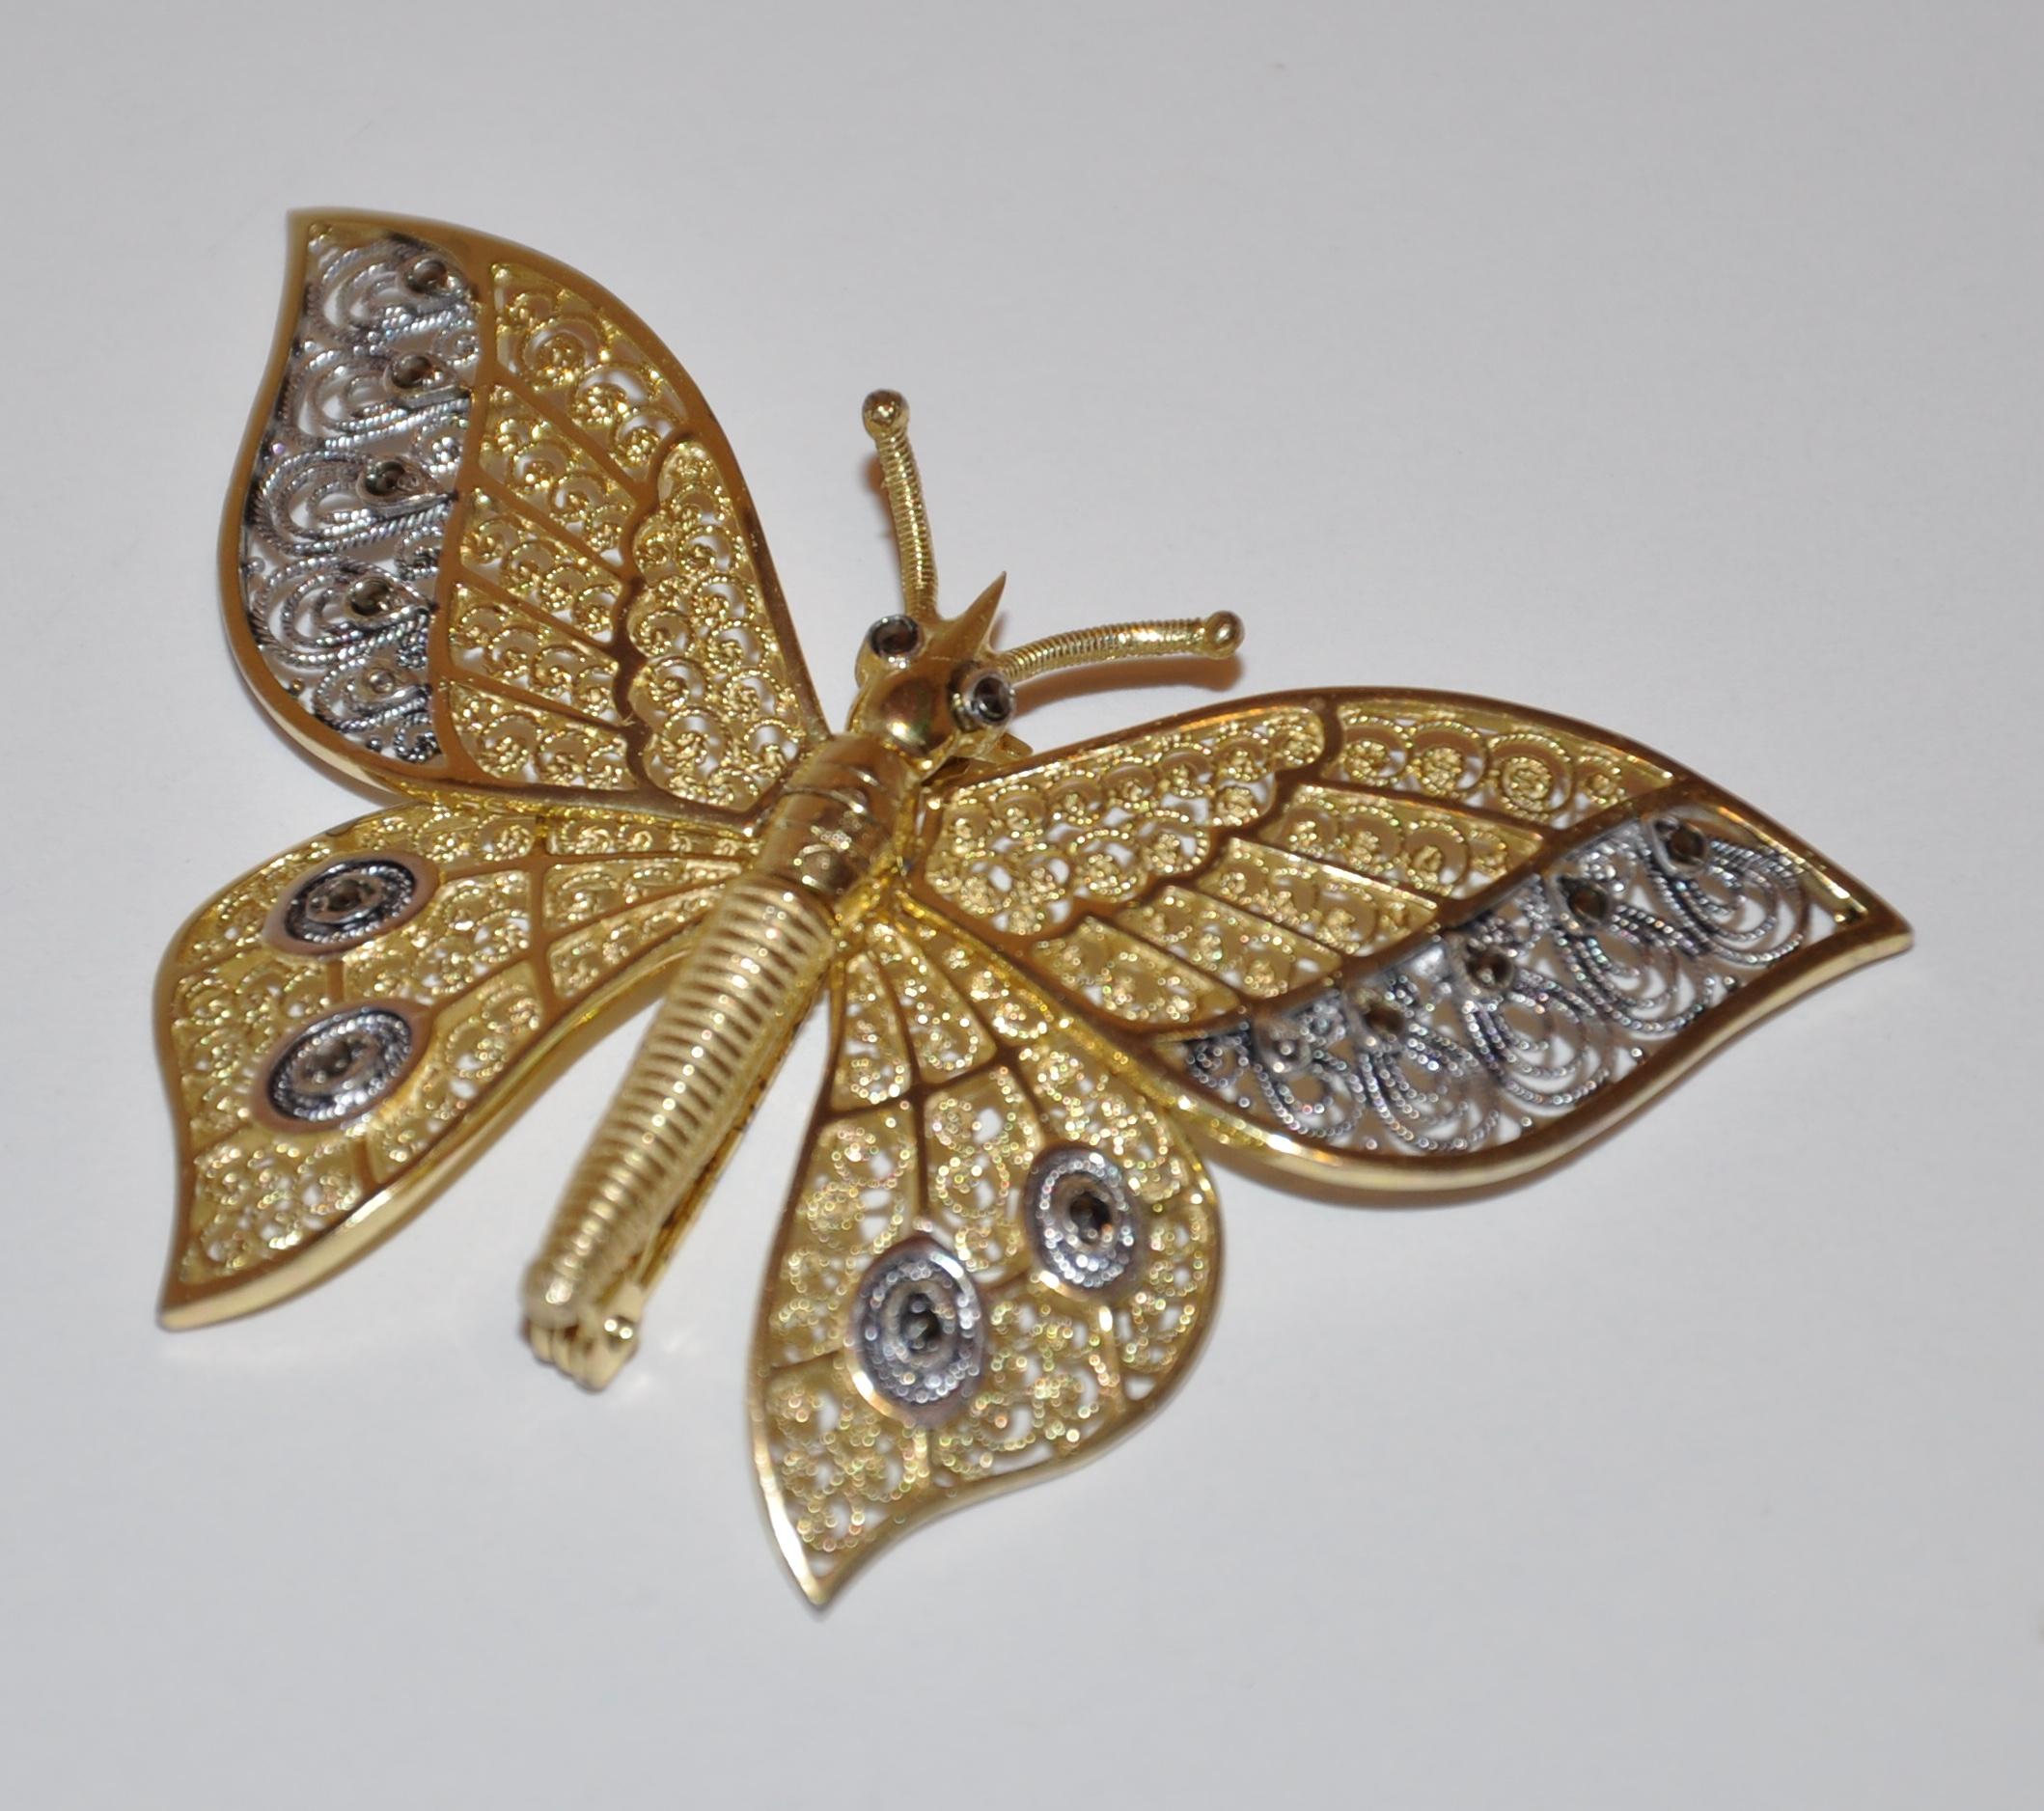        Alice Caviness wunderbar detaillierte Sterling Silber mit Gold-Overlay Schmetterling Brosche hat alle vier Flügel beweglich, wenn gewünscht. Filigrane Handarbeit und made in Germany. Die oberen Tragflächen  misst 2 3/8 Zoll in der Breite,